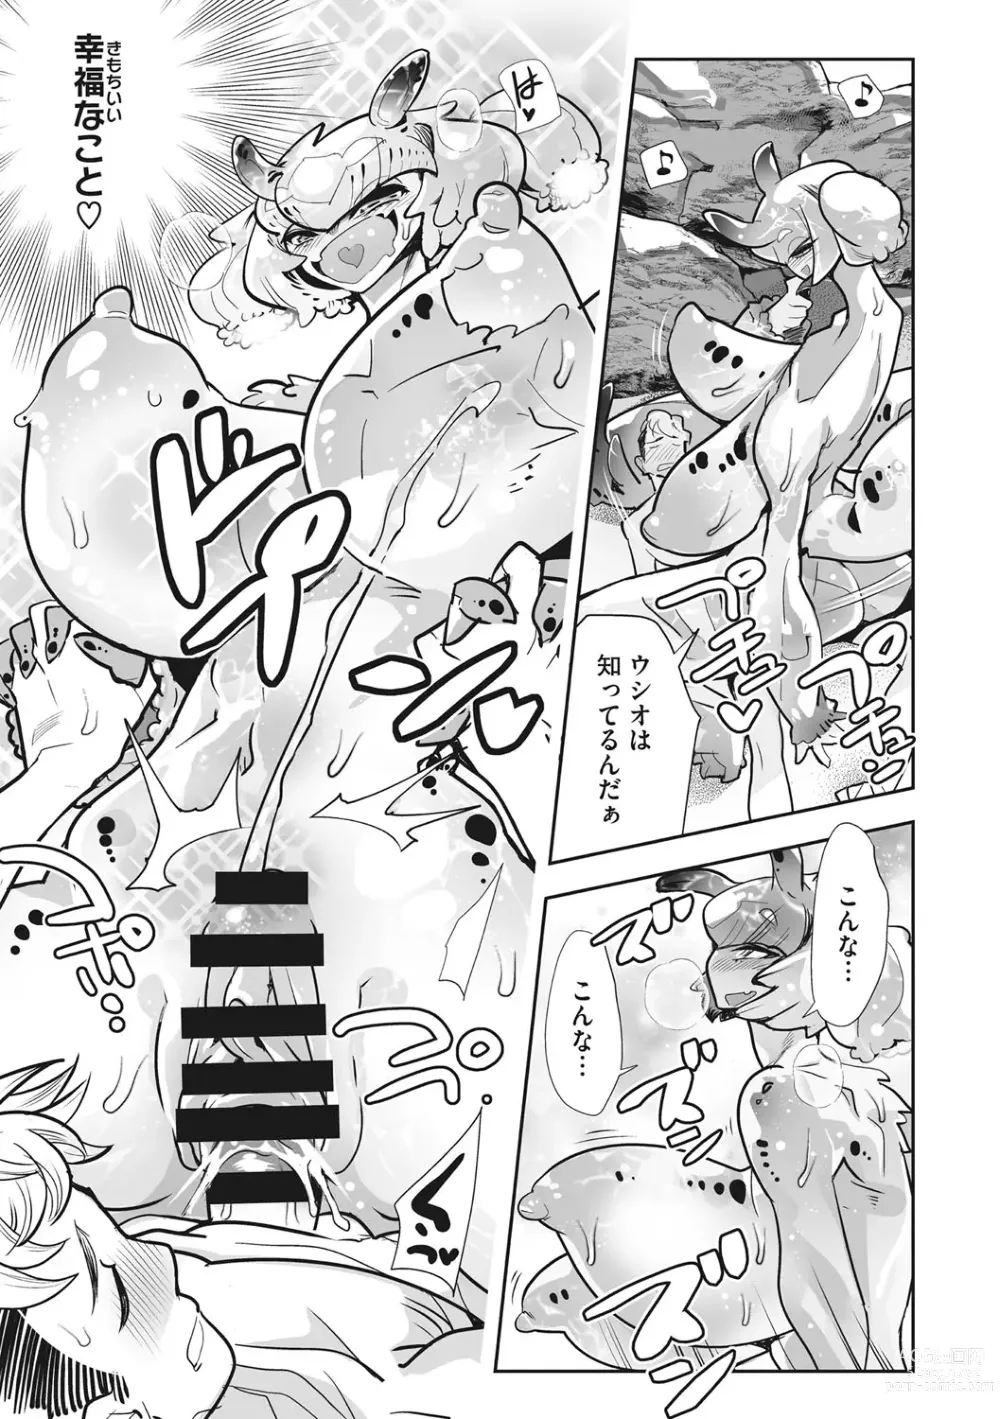 Page 218 of manga Kemono to Koishite Nani ga Warui!